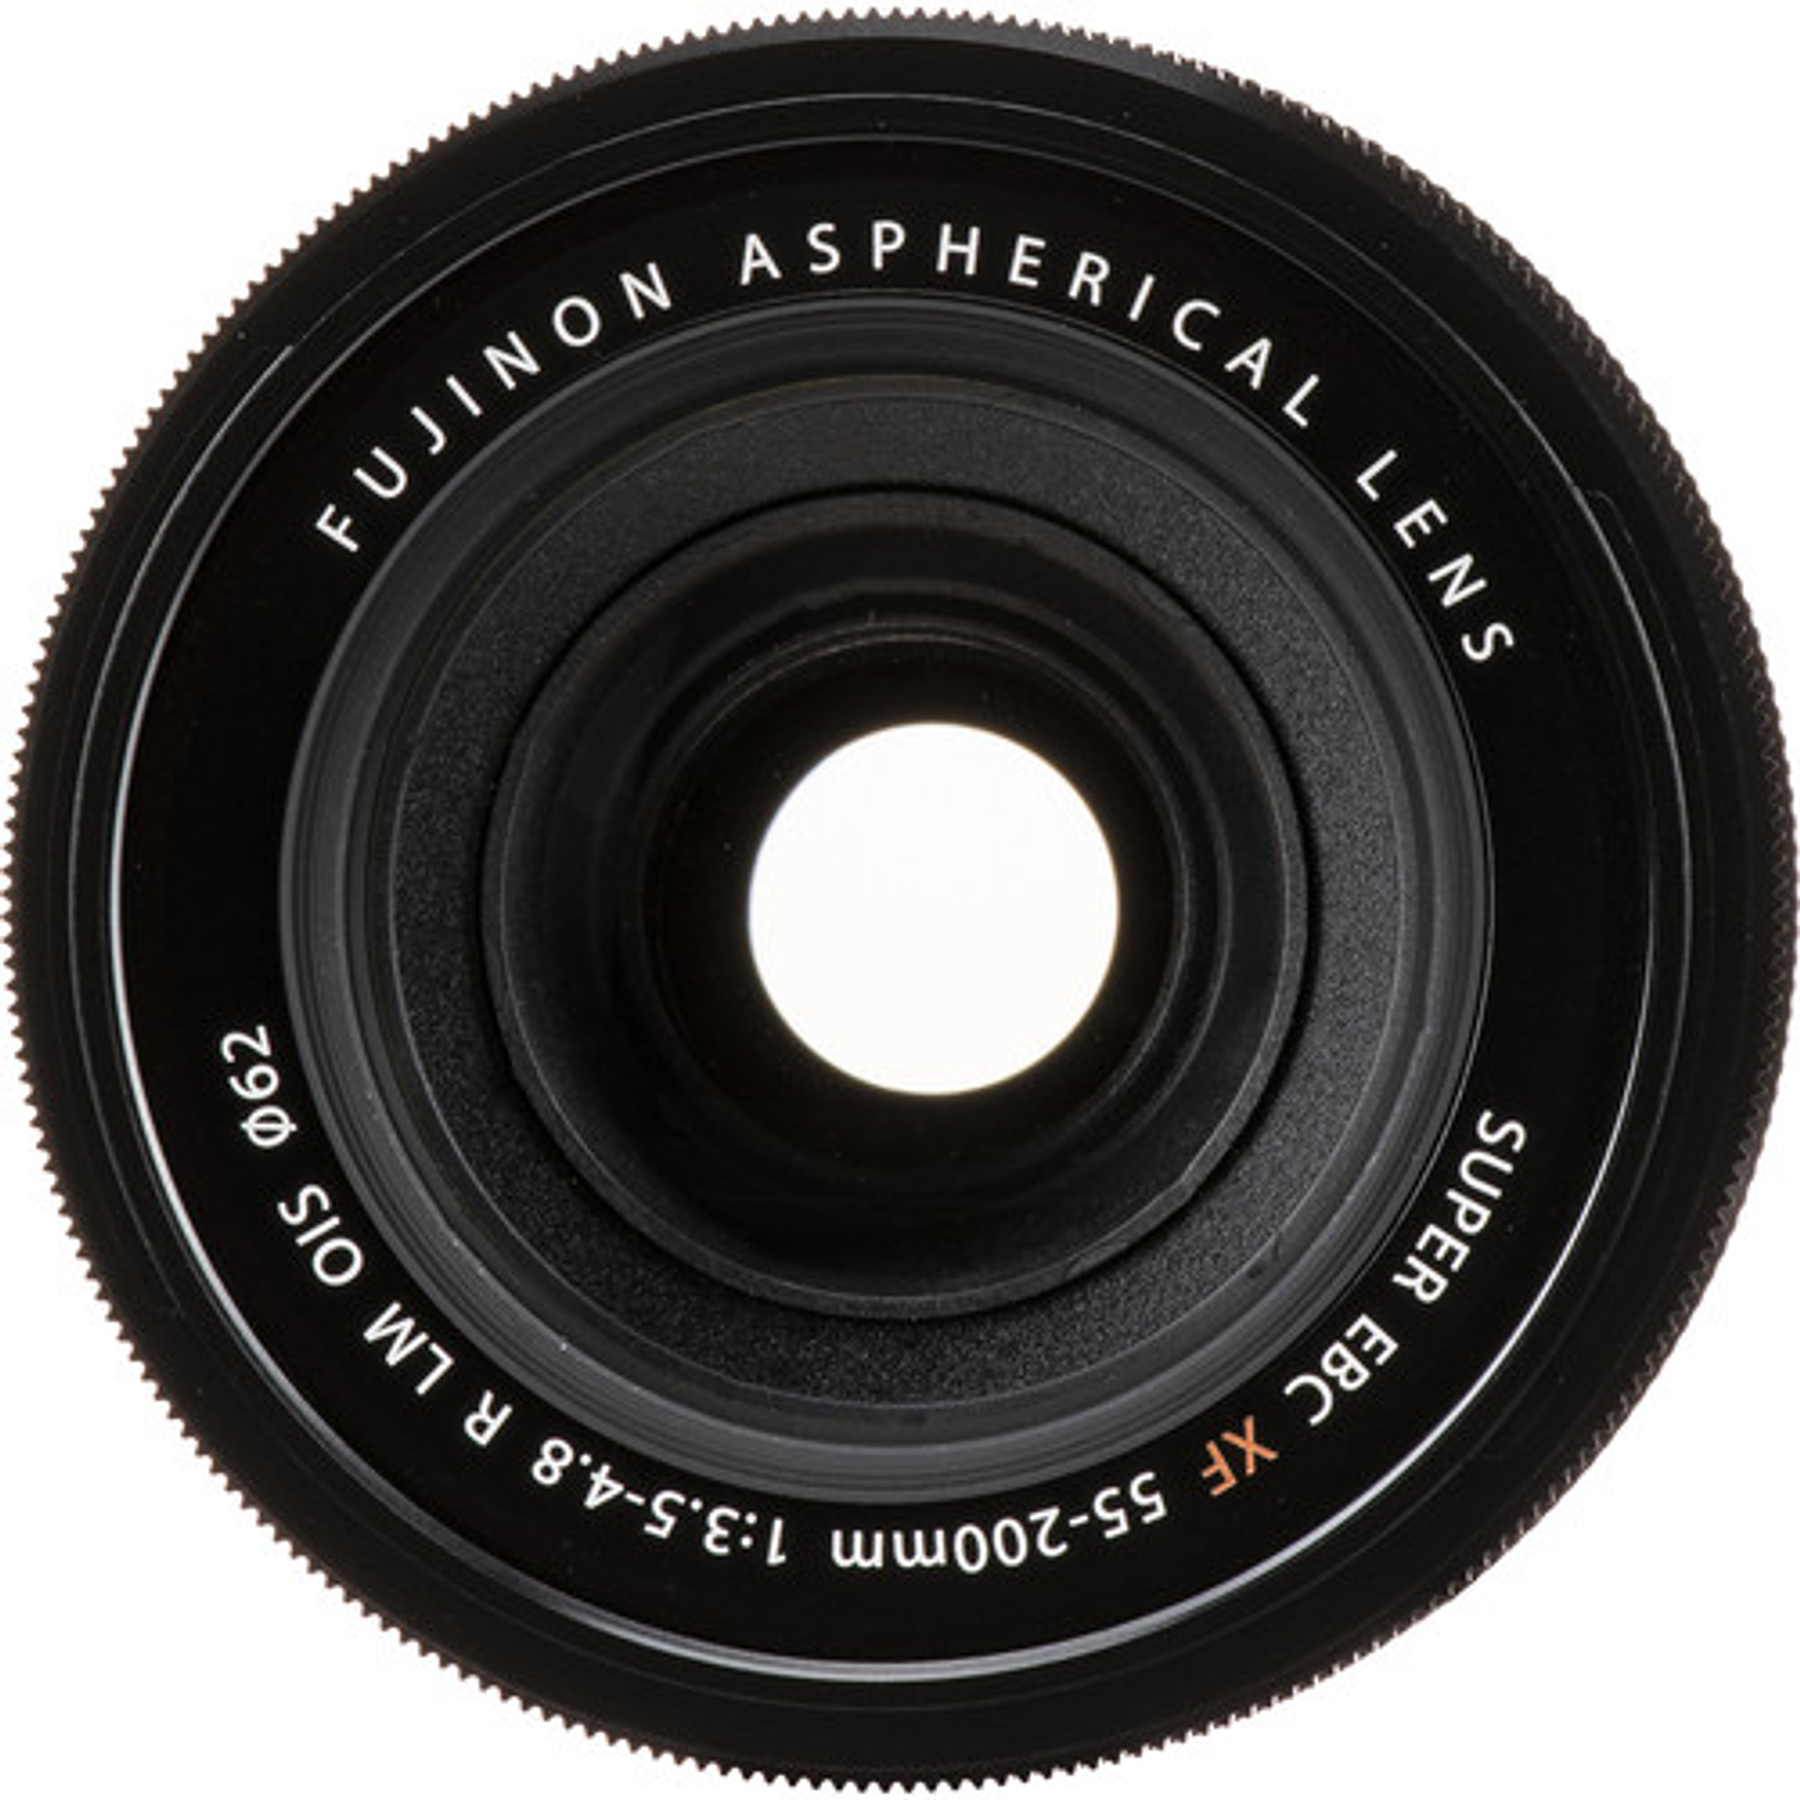 Fujifilm XF 55-200mm. F3.5-4.8 R LM OIS